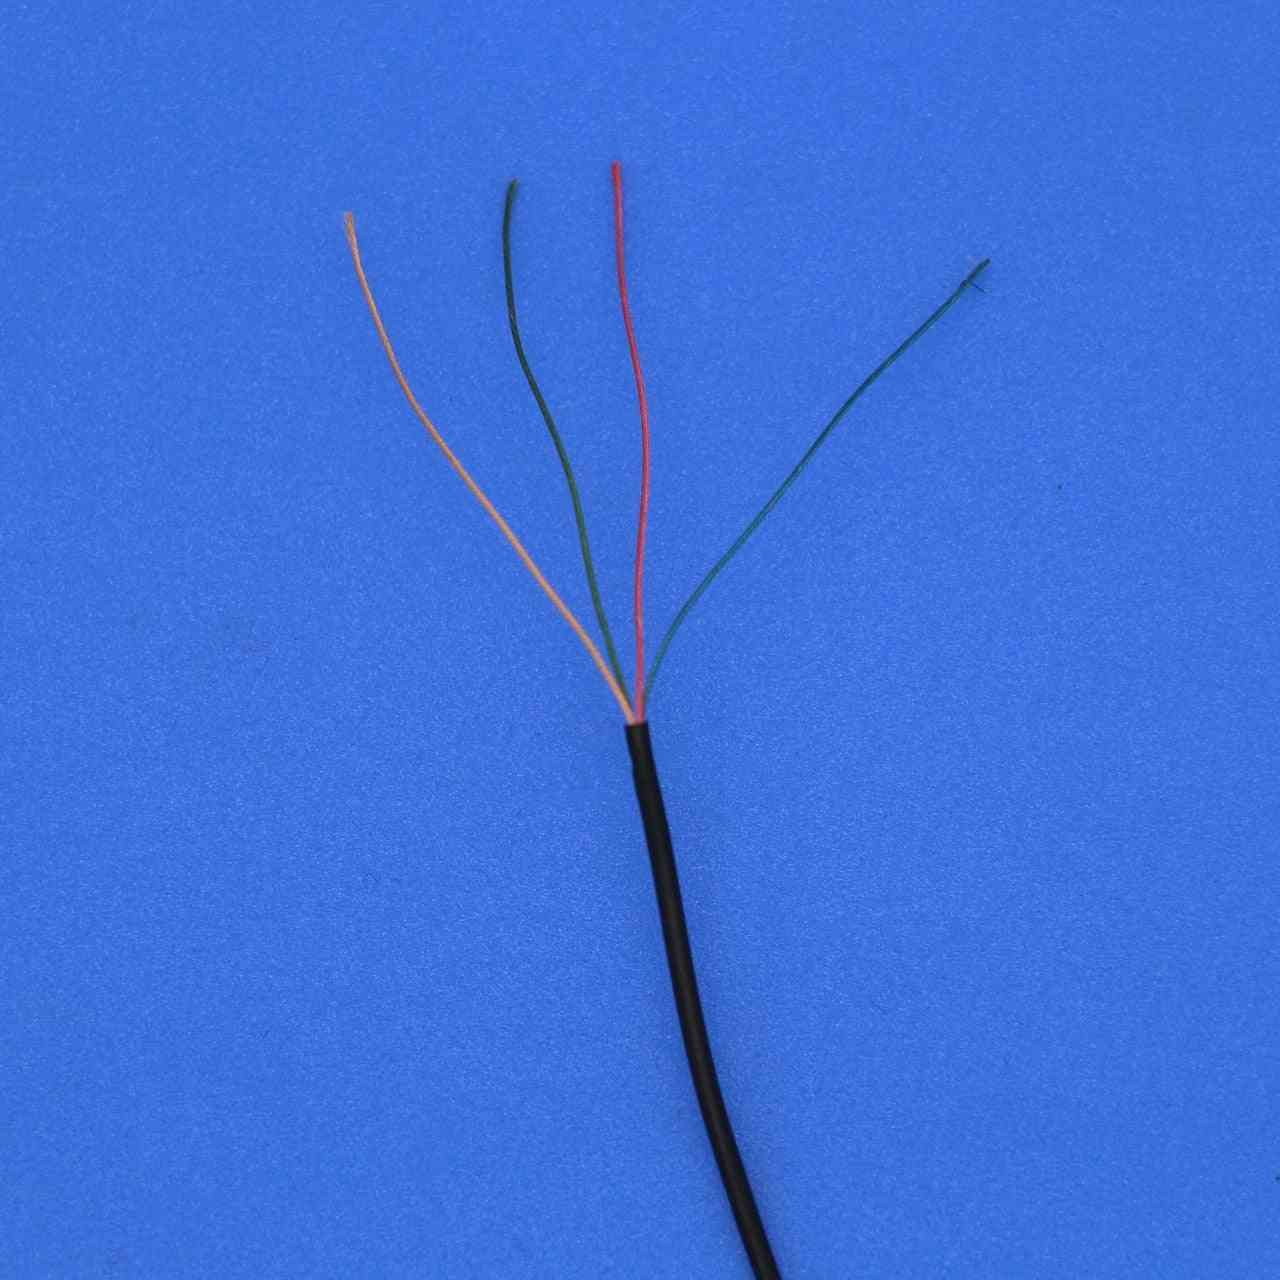 Cable para auriculares de hilo de algodón, hilo de varios hilos y varios hilos - 2 hilos